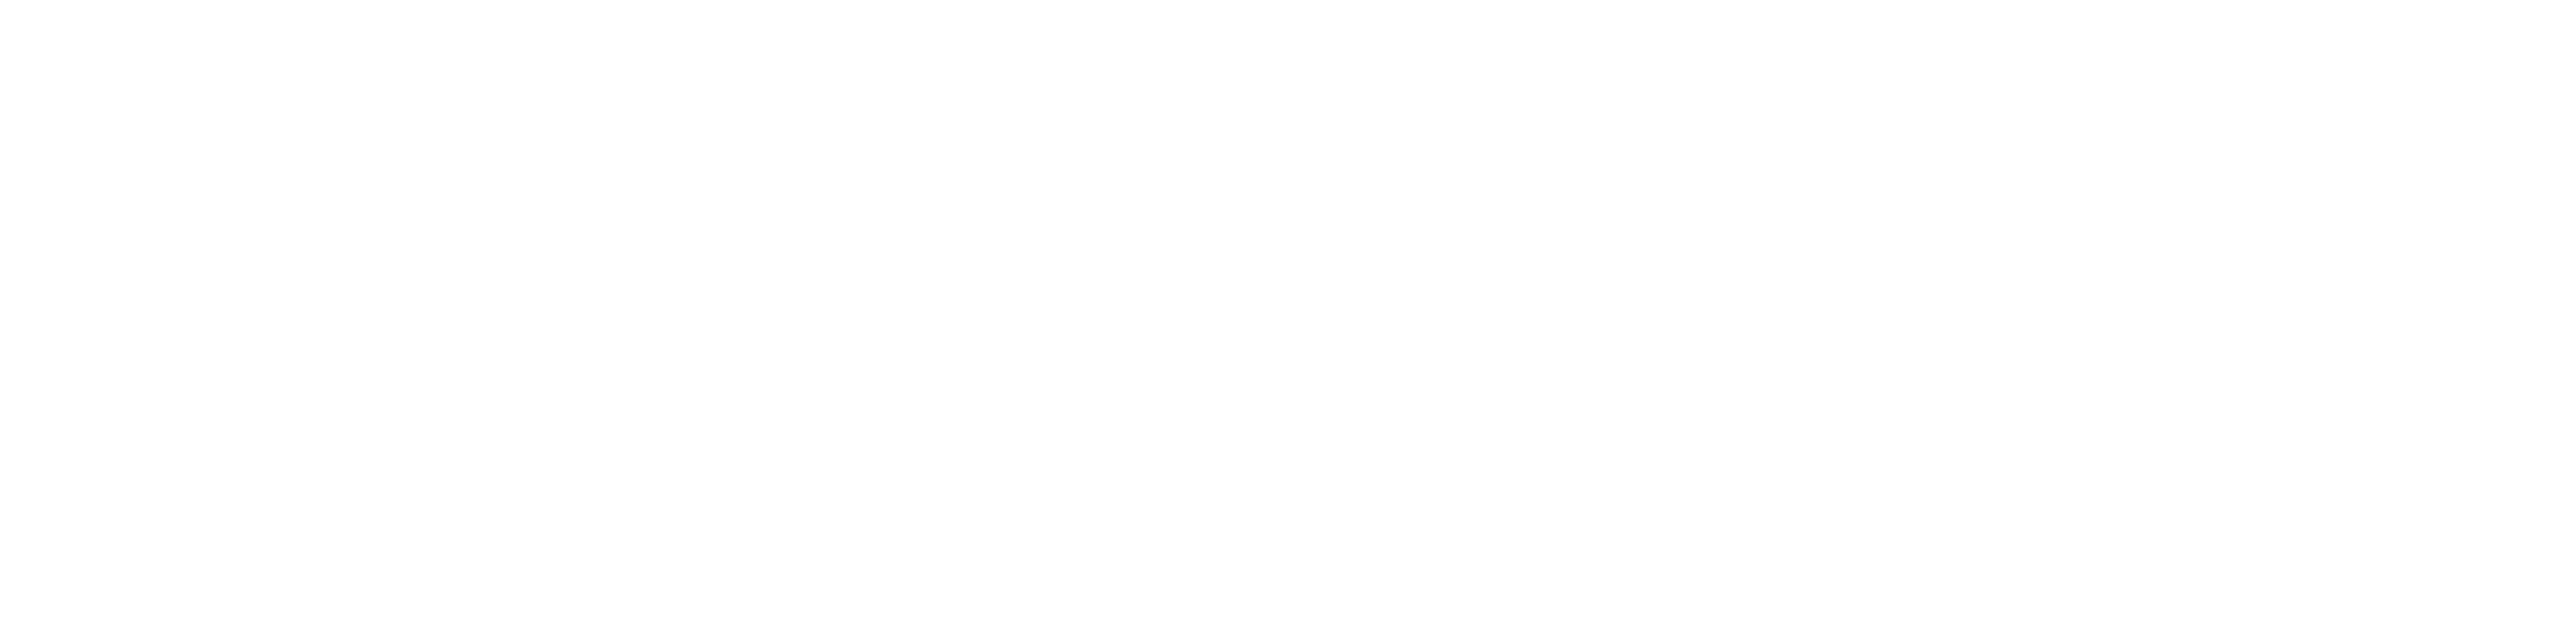 Humanize_IT_Horizontal_White-4